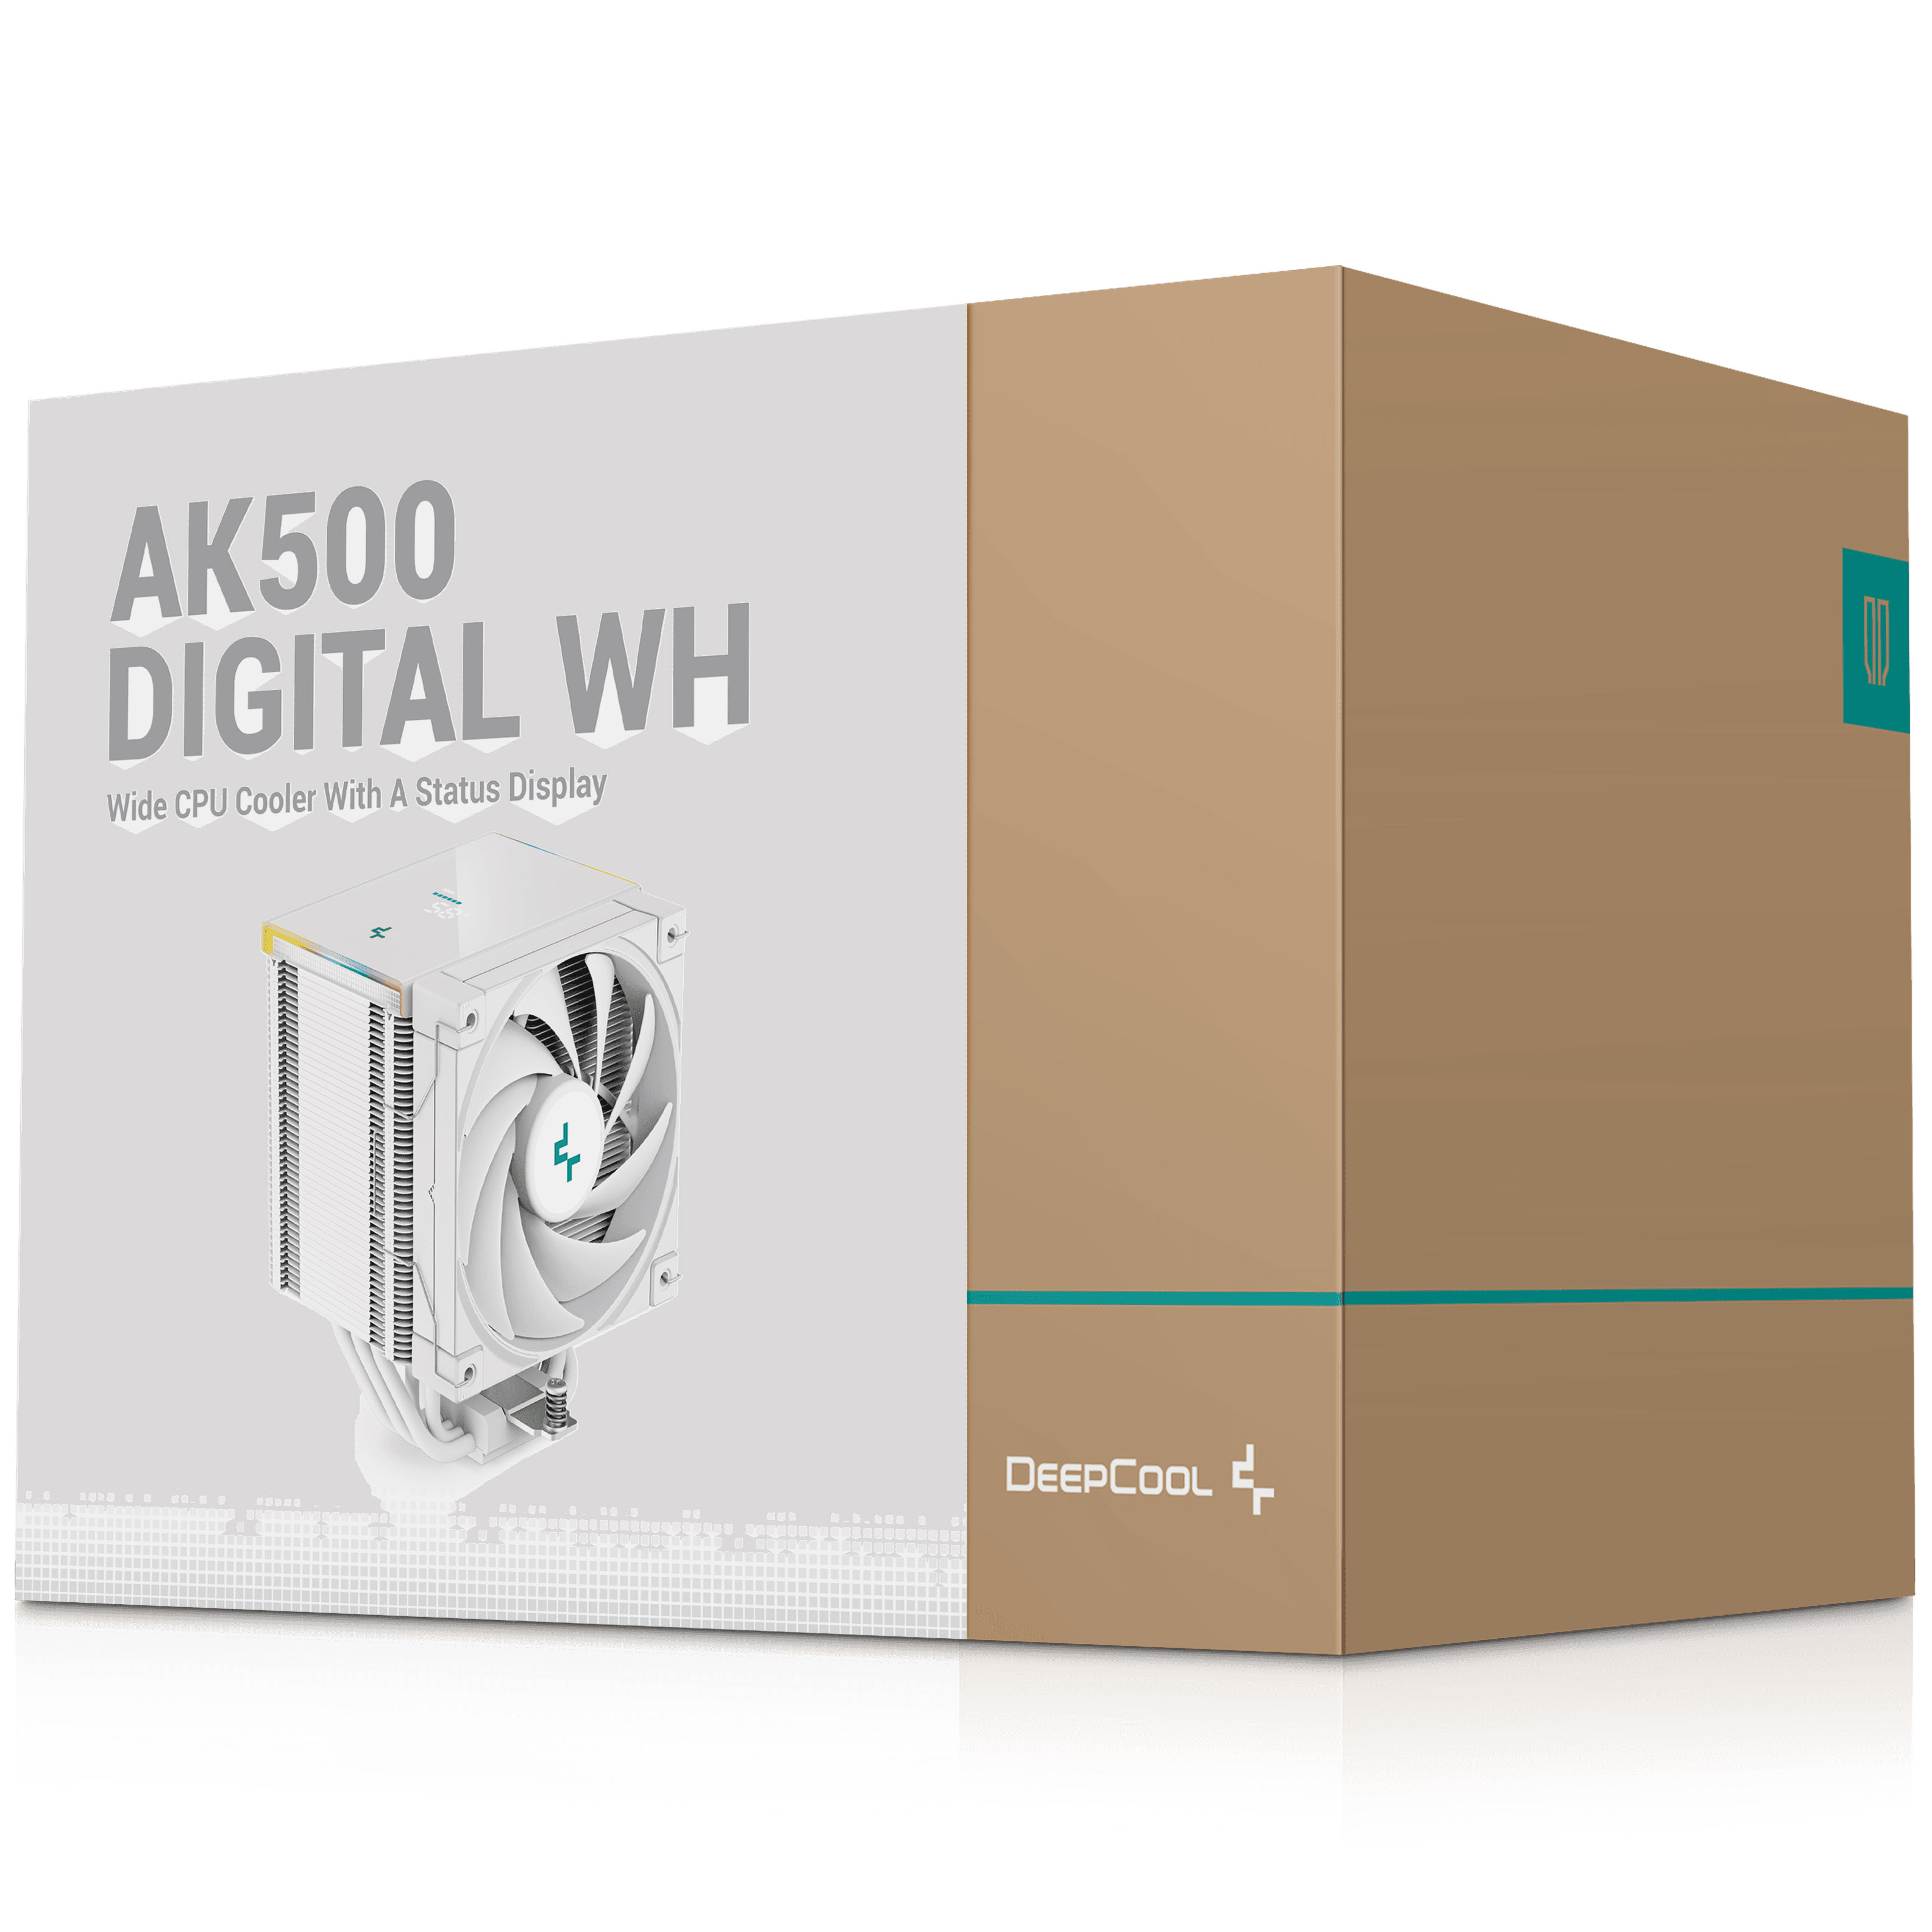 DeepCool - Deepcool AK500 Digital White CPU Cooler - 120mm